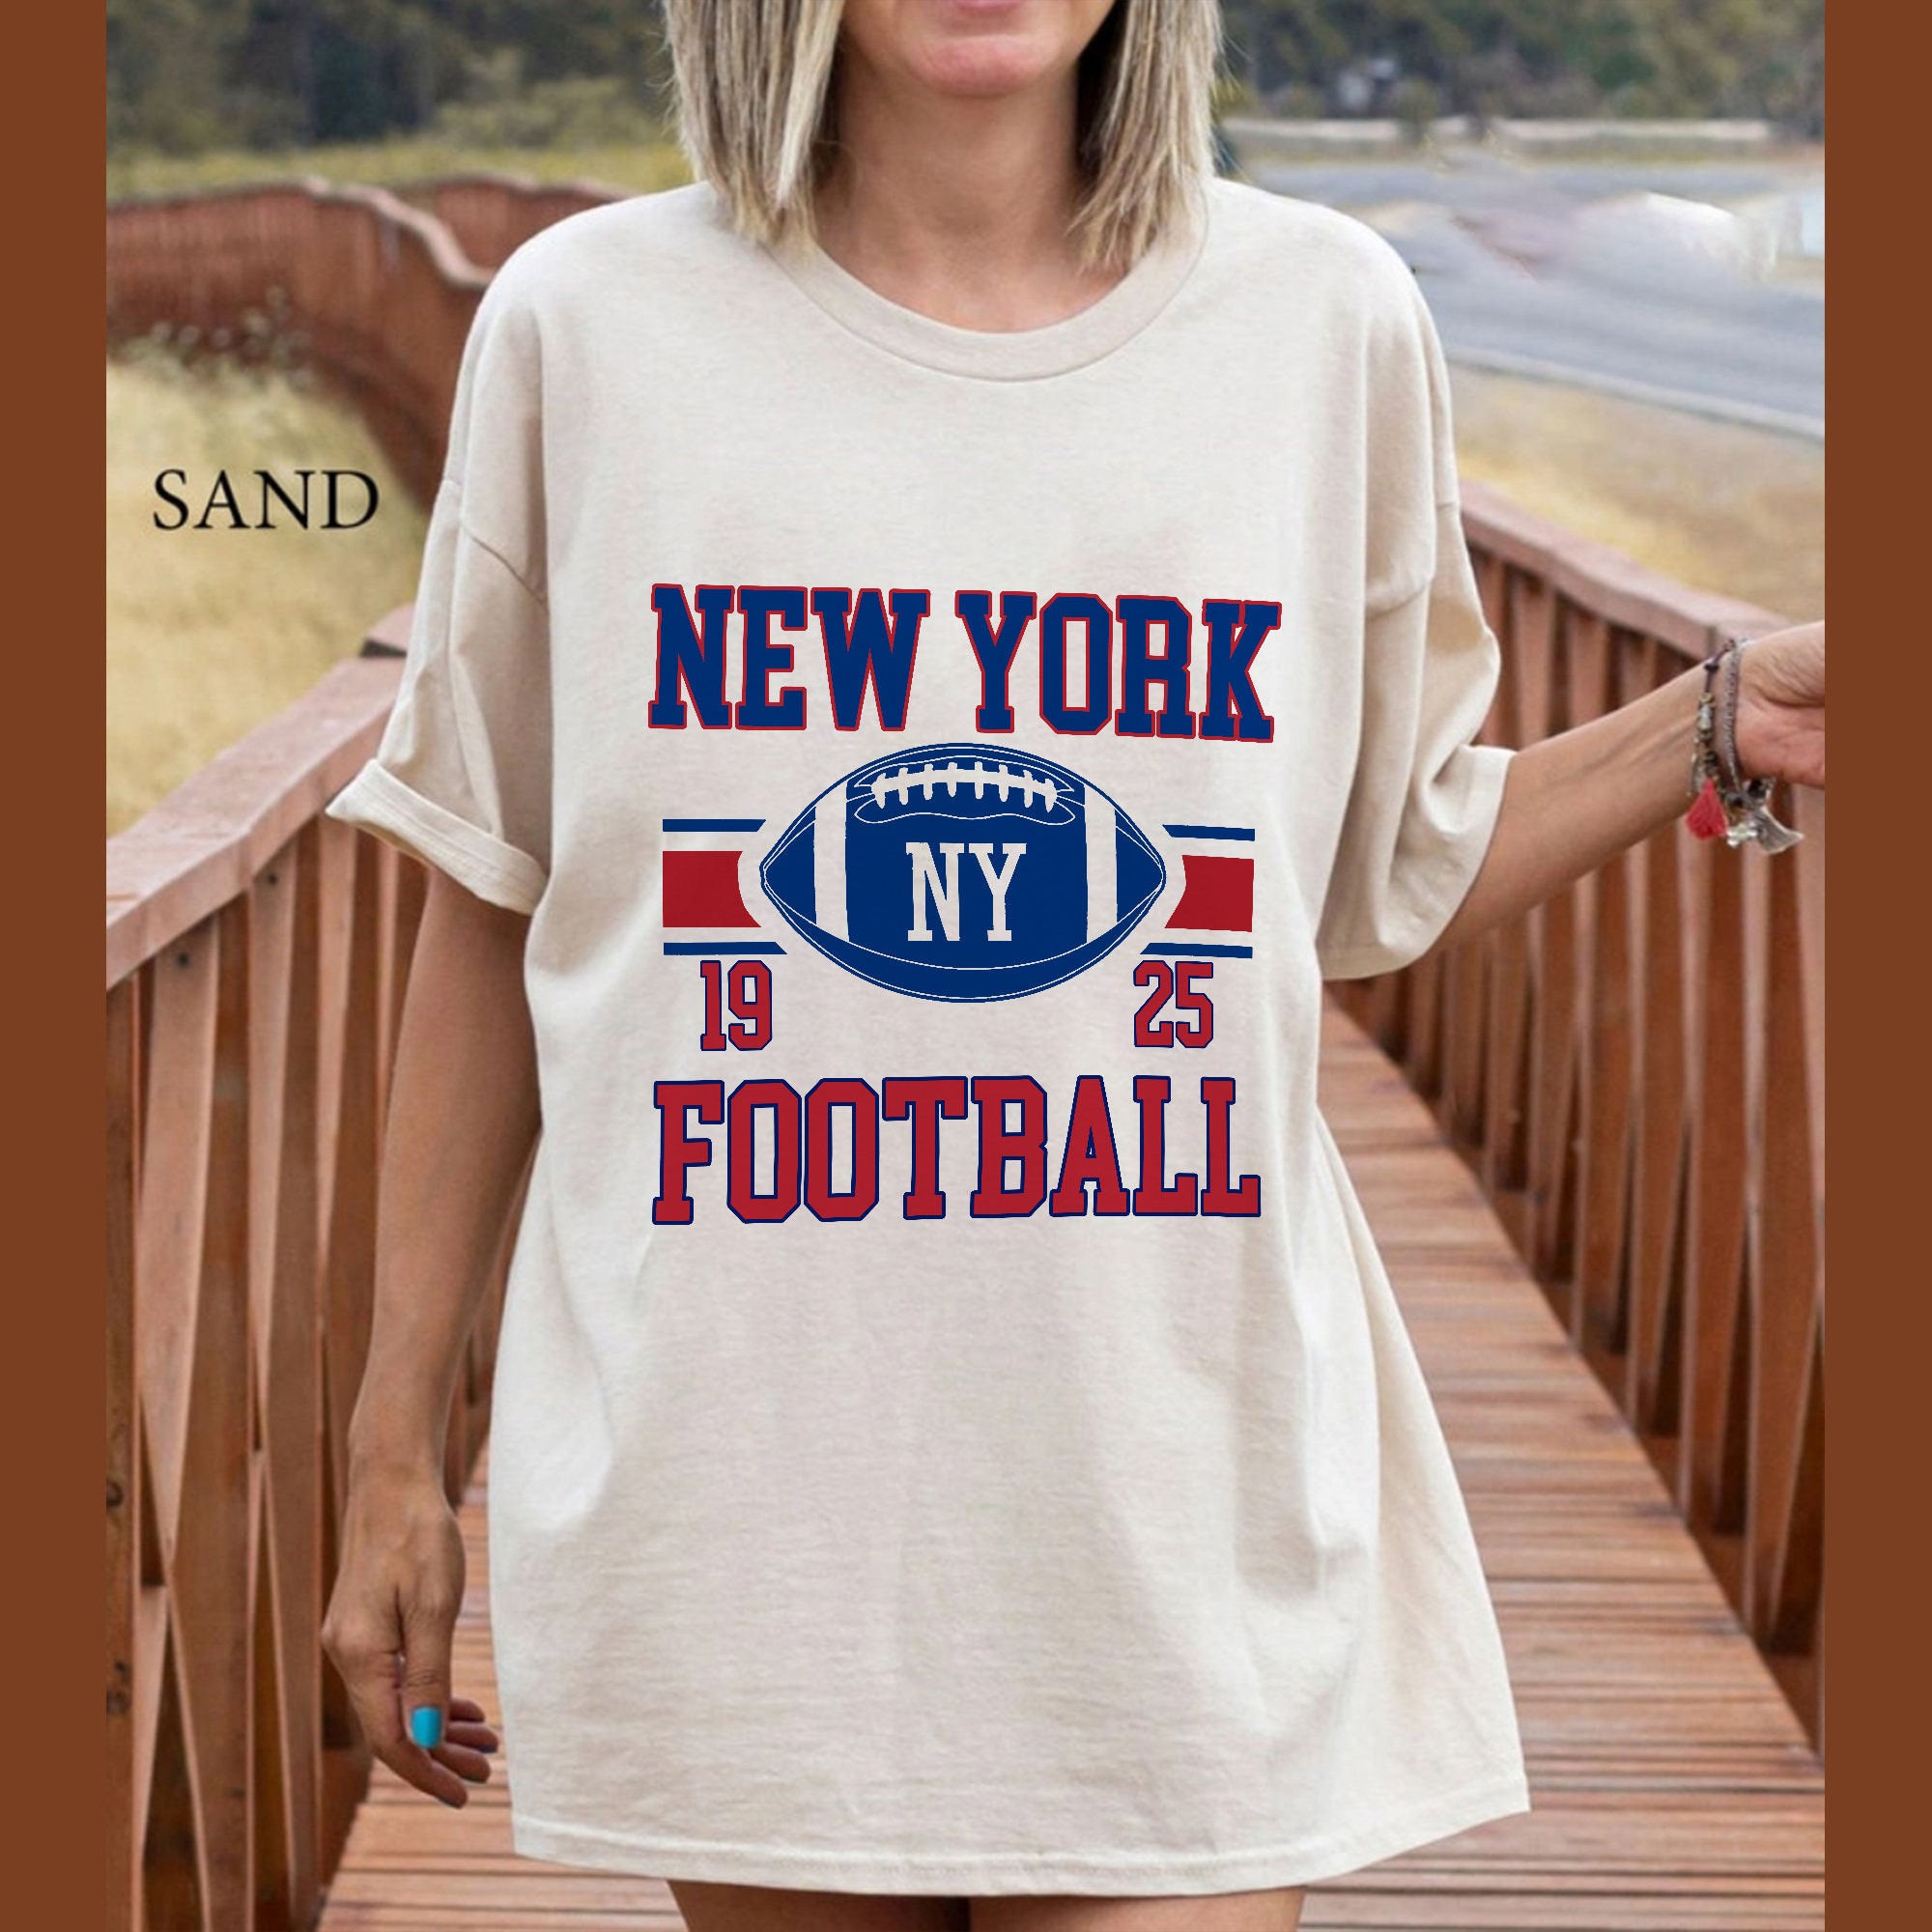 New York Giants T Shirt 